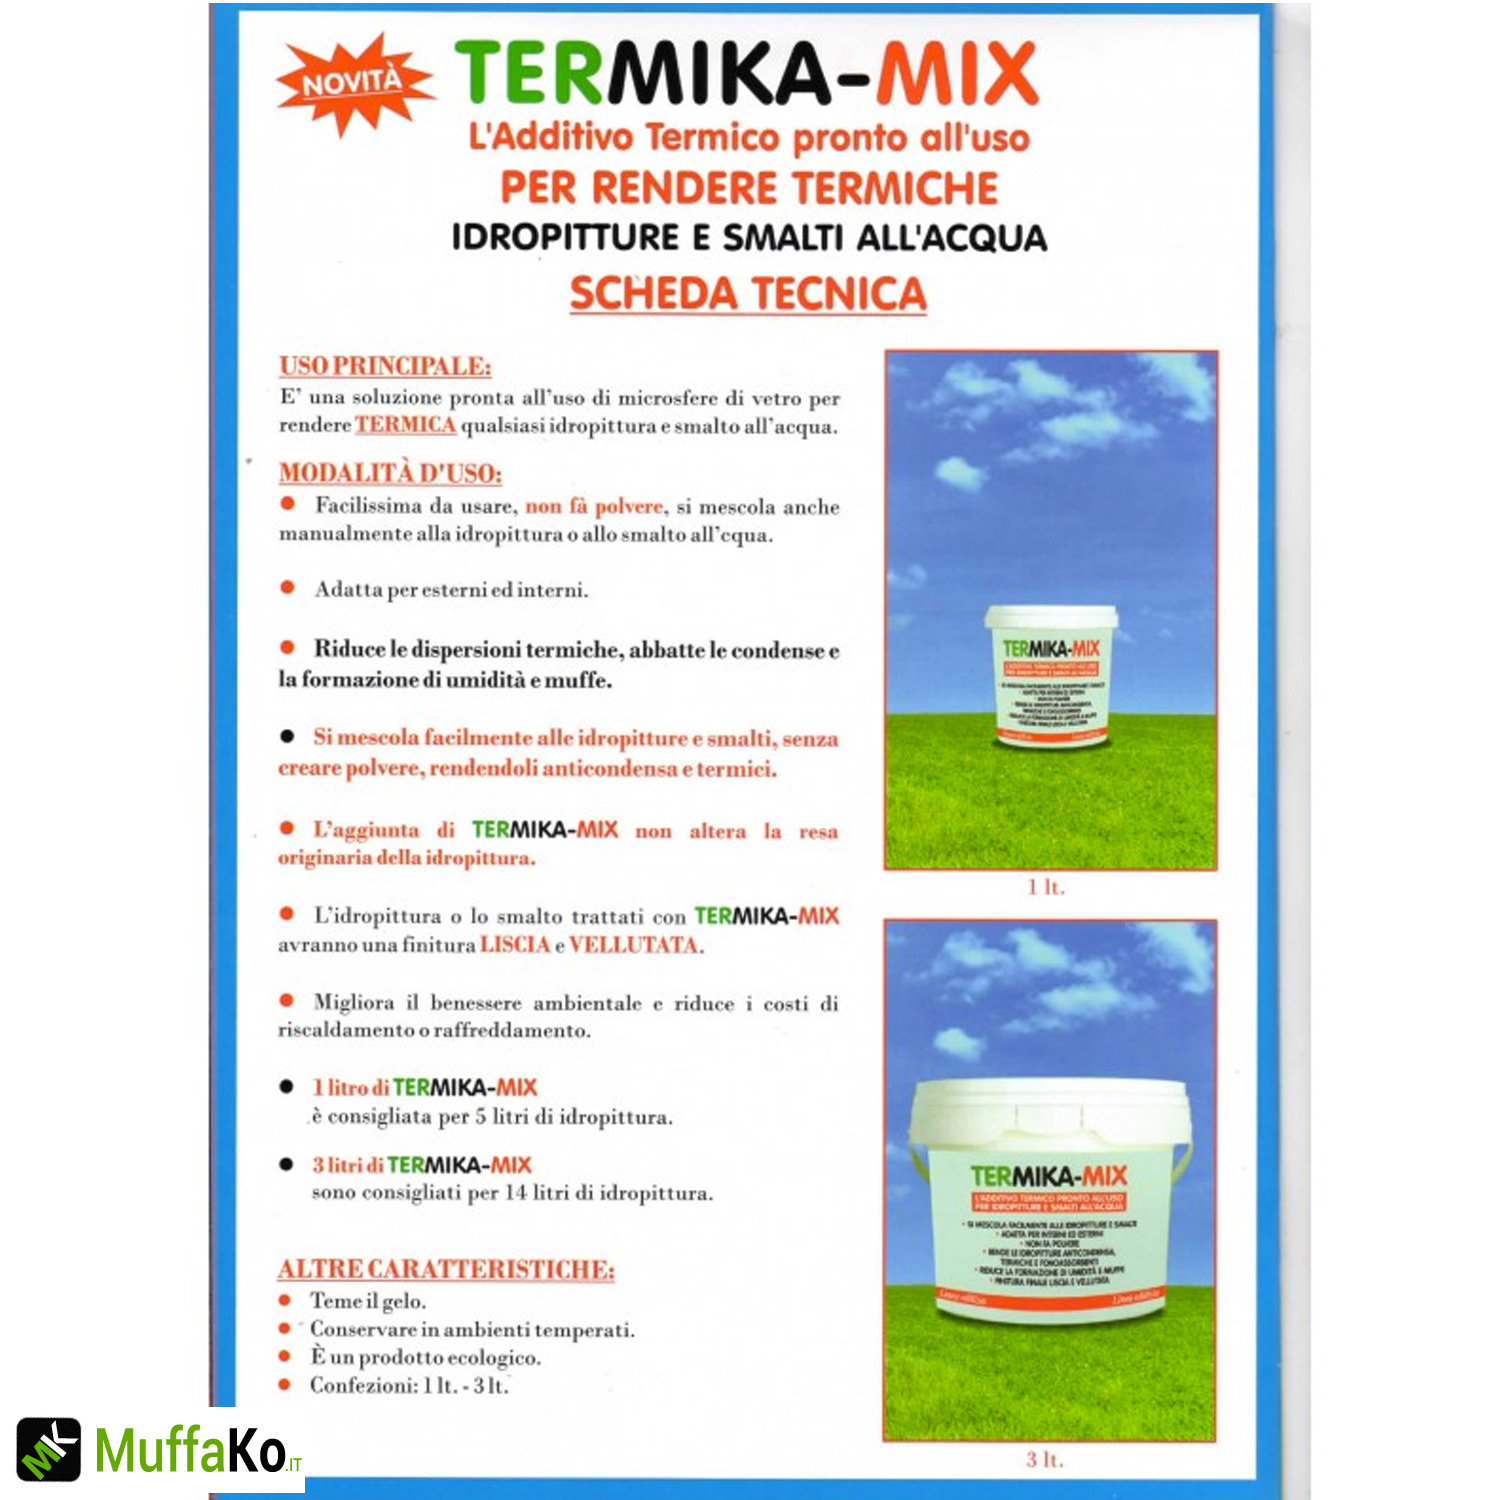 Termica-Mix additivo termico isolante